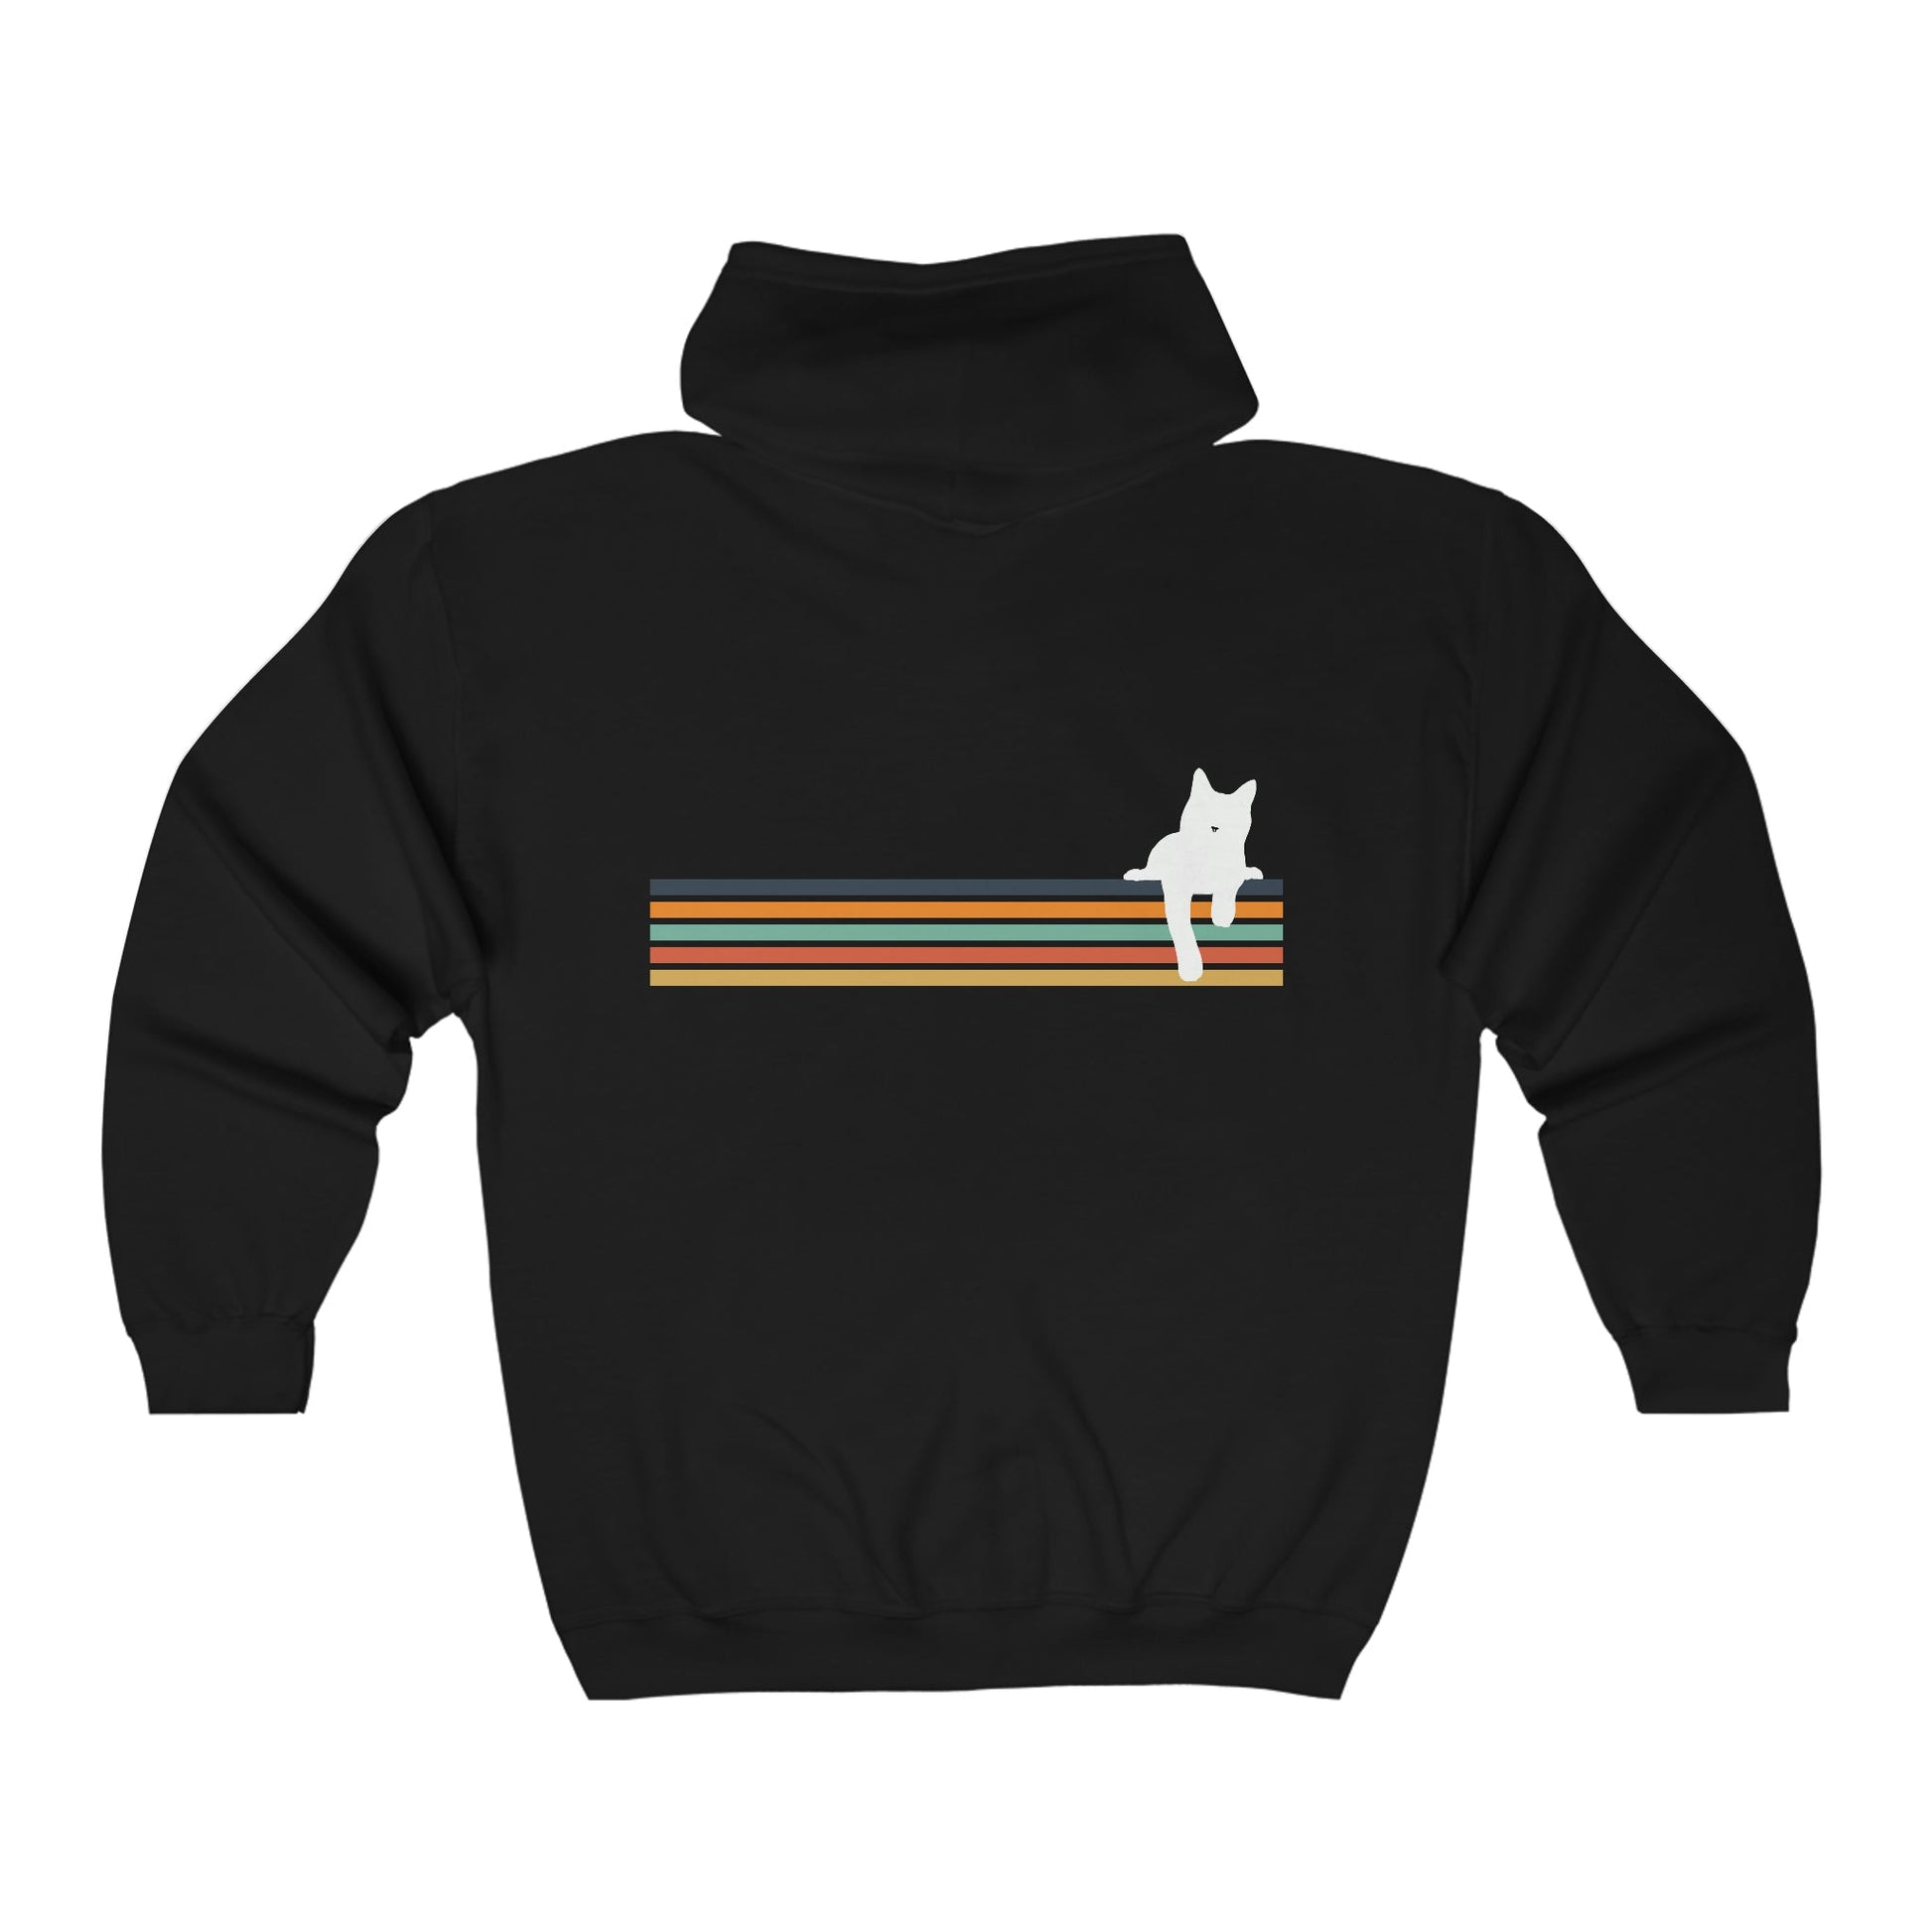 Rainbow Cat | Zip-up Sweatshirt - Detezi Designs-12851402658617376441